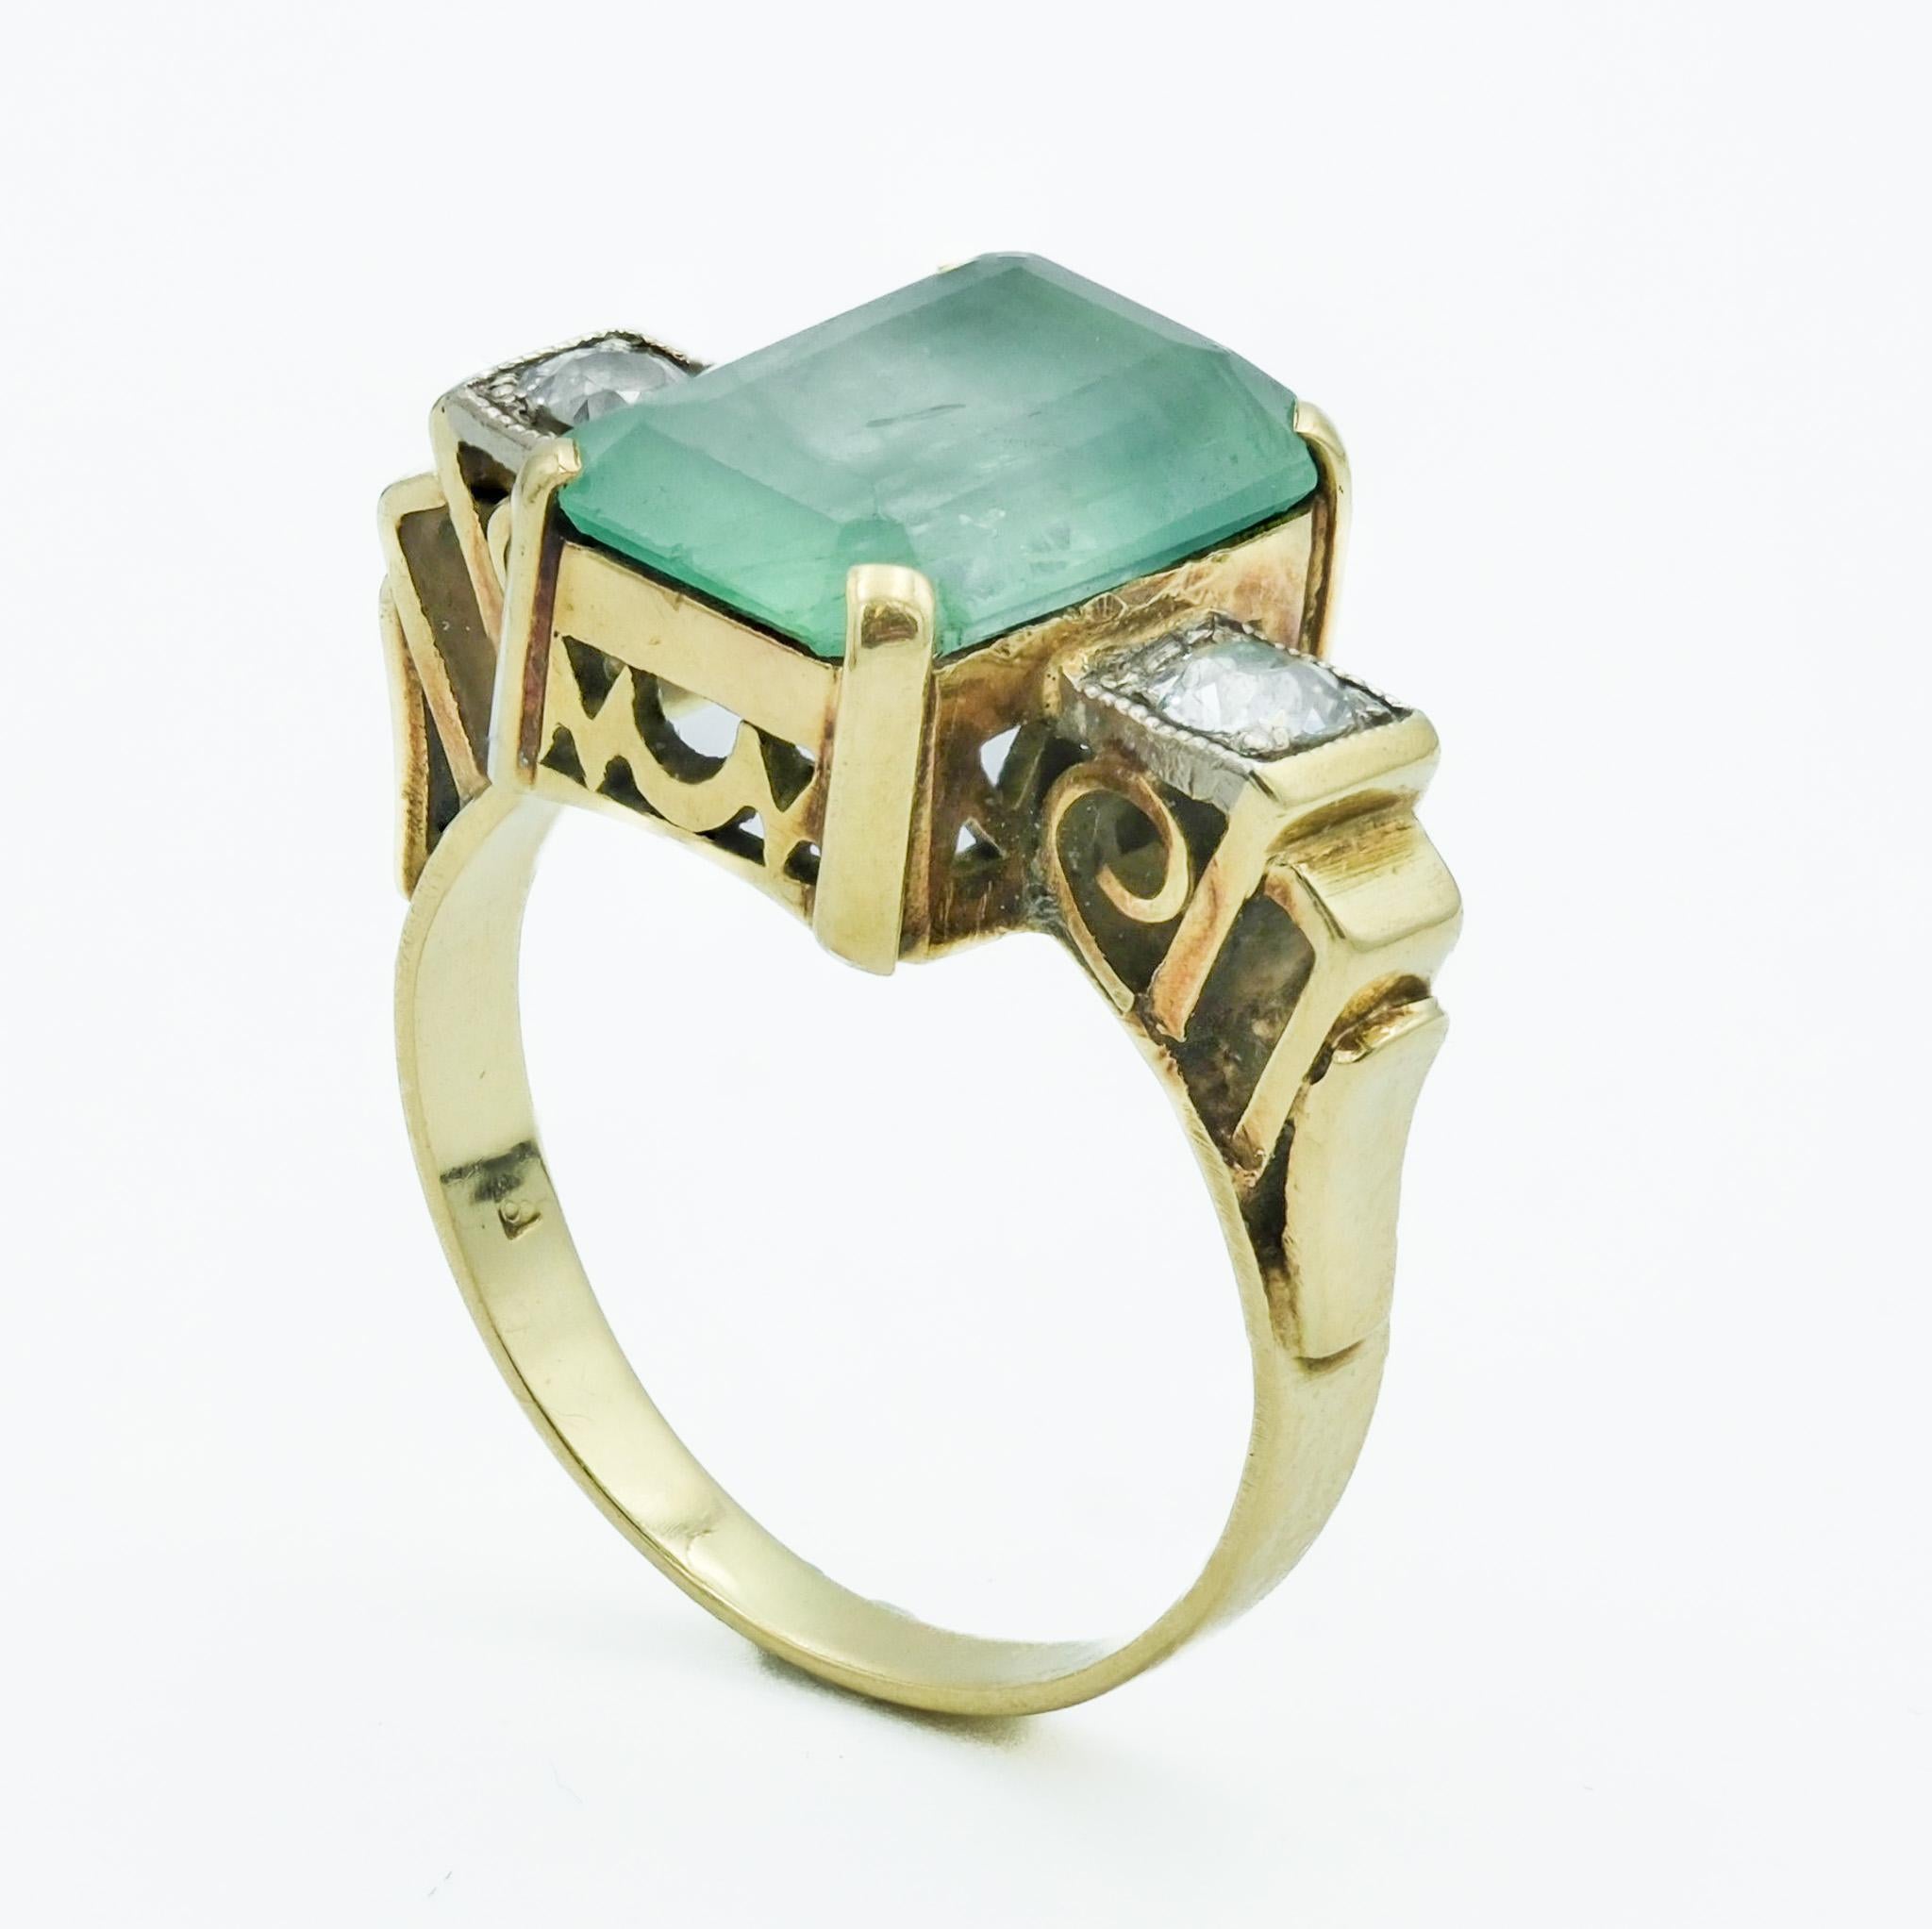 Dieser spätviktorianische Ring hat ein robustes Design mit einem zentralen 3,18-karätigen Smaragd, der in ein 14-karätiges Gelbgoldband eingefasst ist. Der Smaragd von beachtlicher Größe ist in einem für die damalige Zeit typischen Schliff